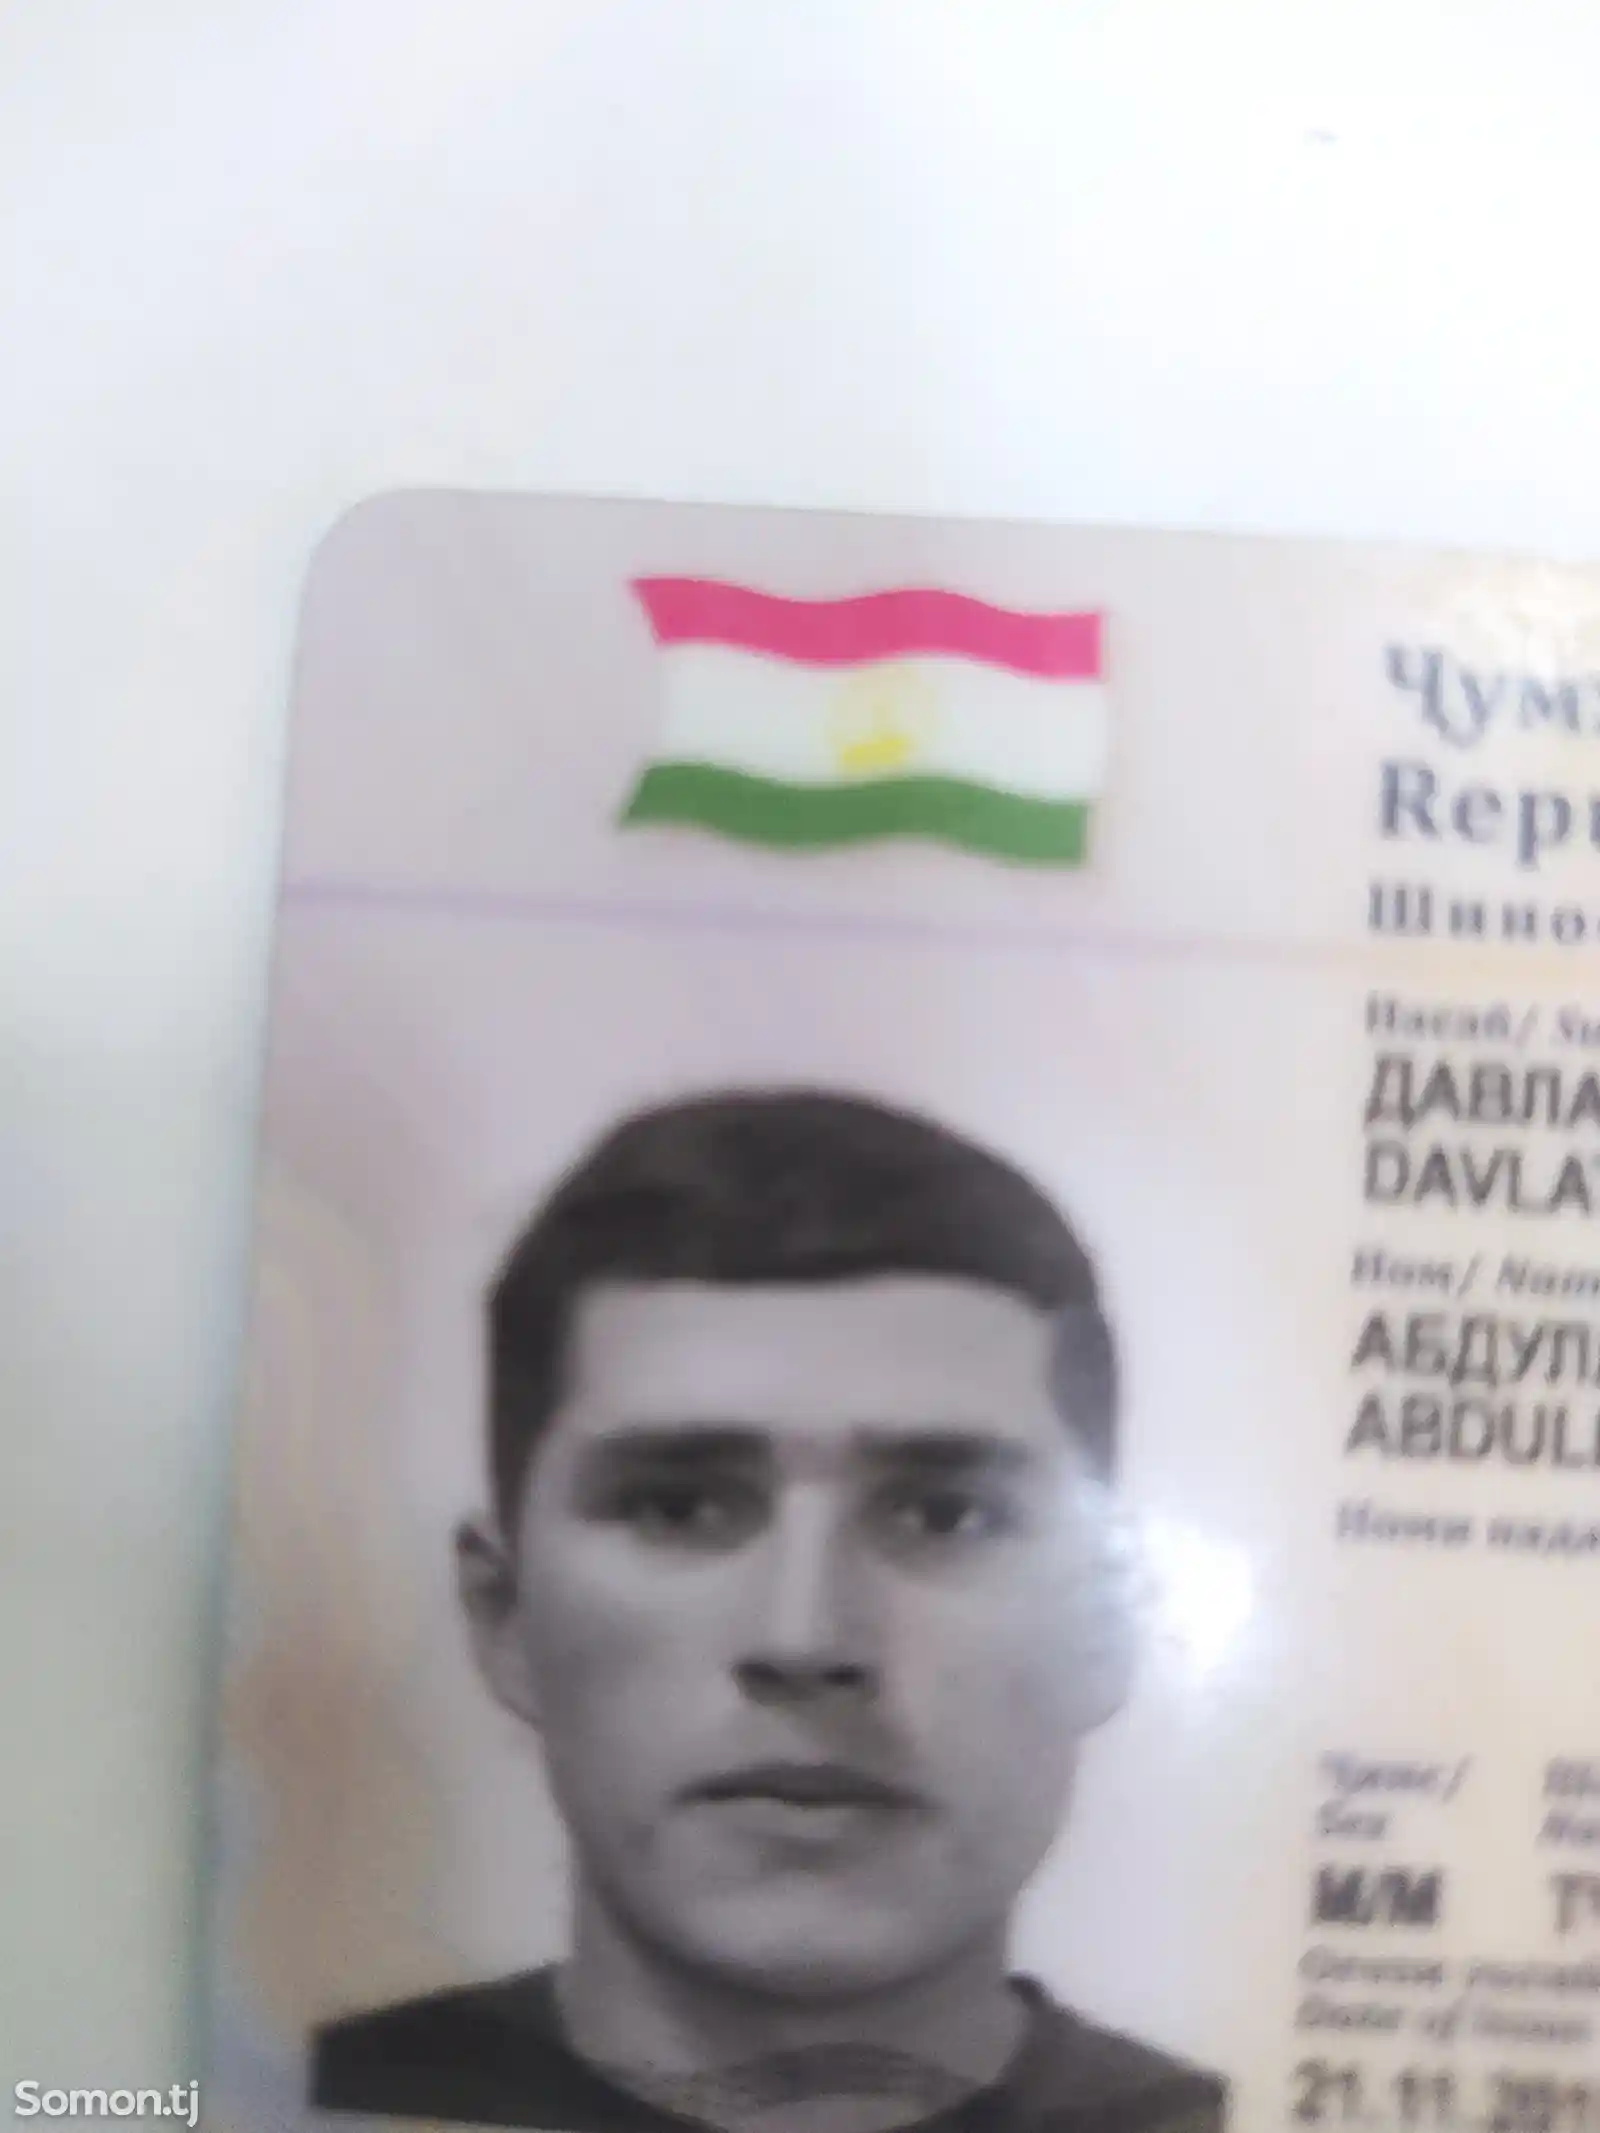 Найден паспорт на имя Давлатали Абдуллохуча